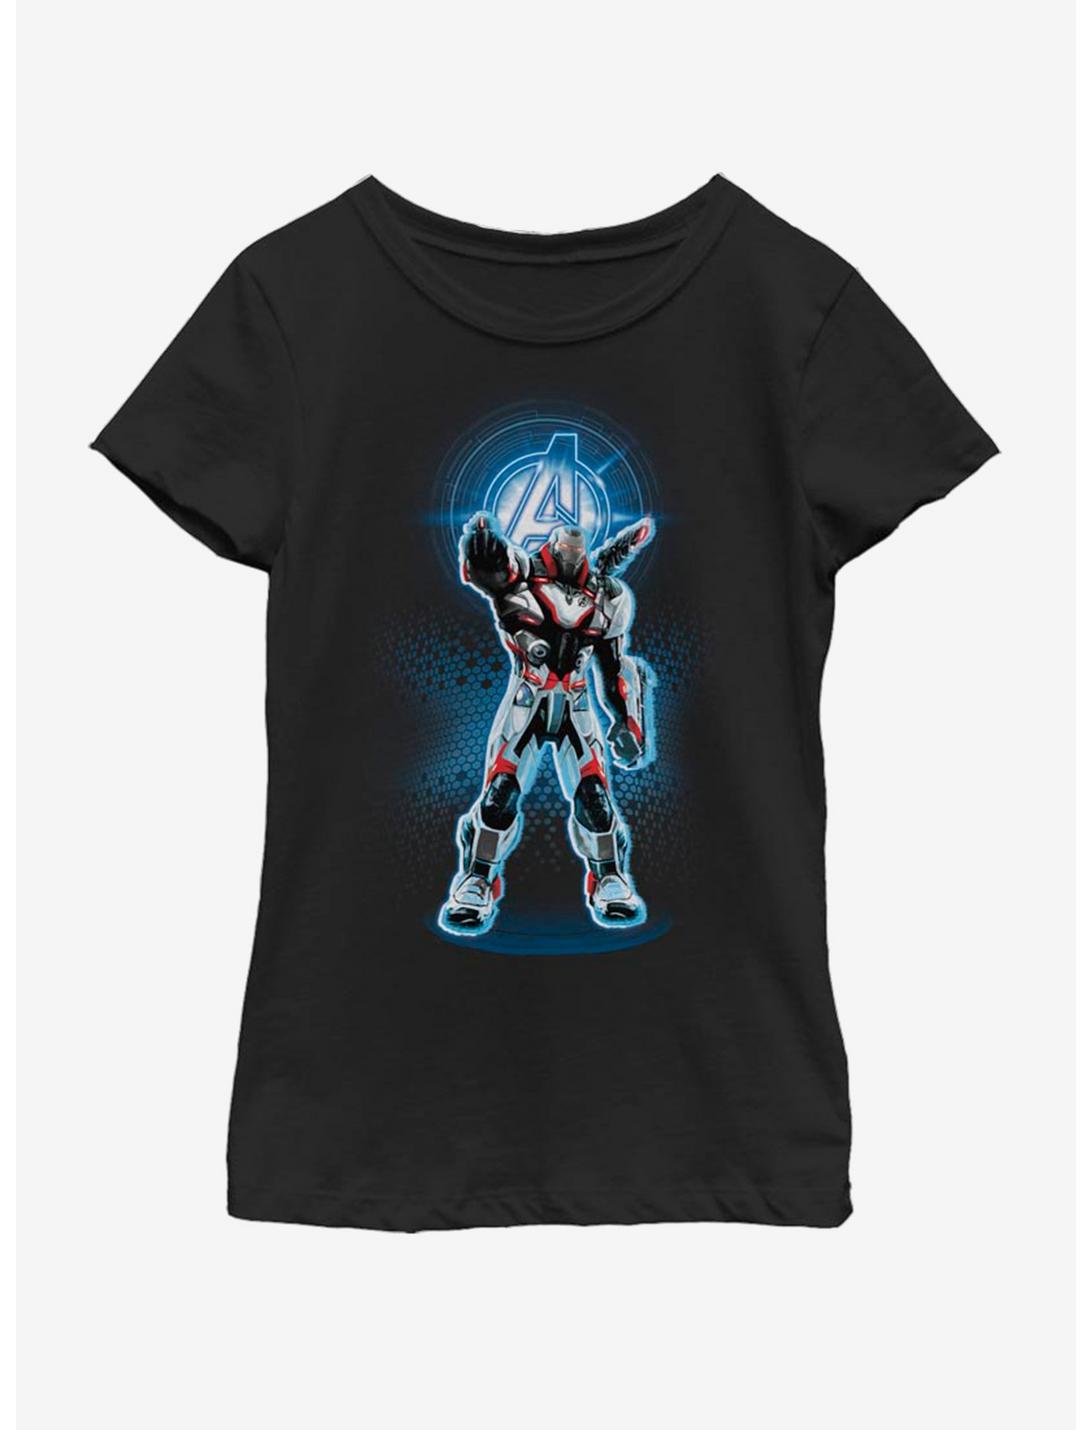 Marvel Avengers: Endgame Avenger War Machine Youth Girls T-Shirt, BLACK, hi-res